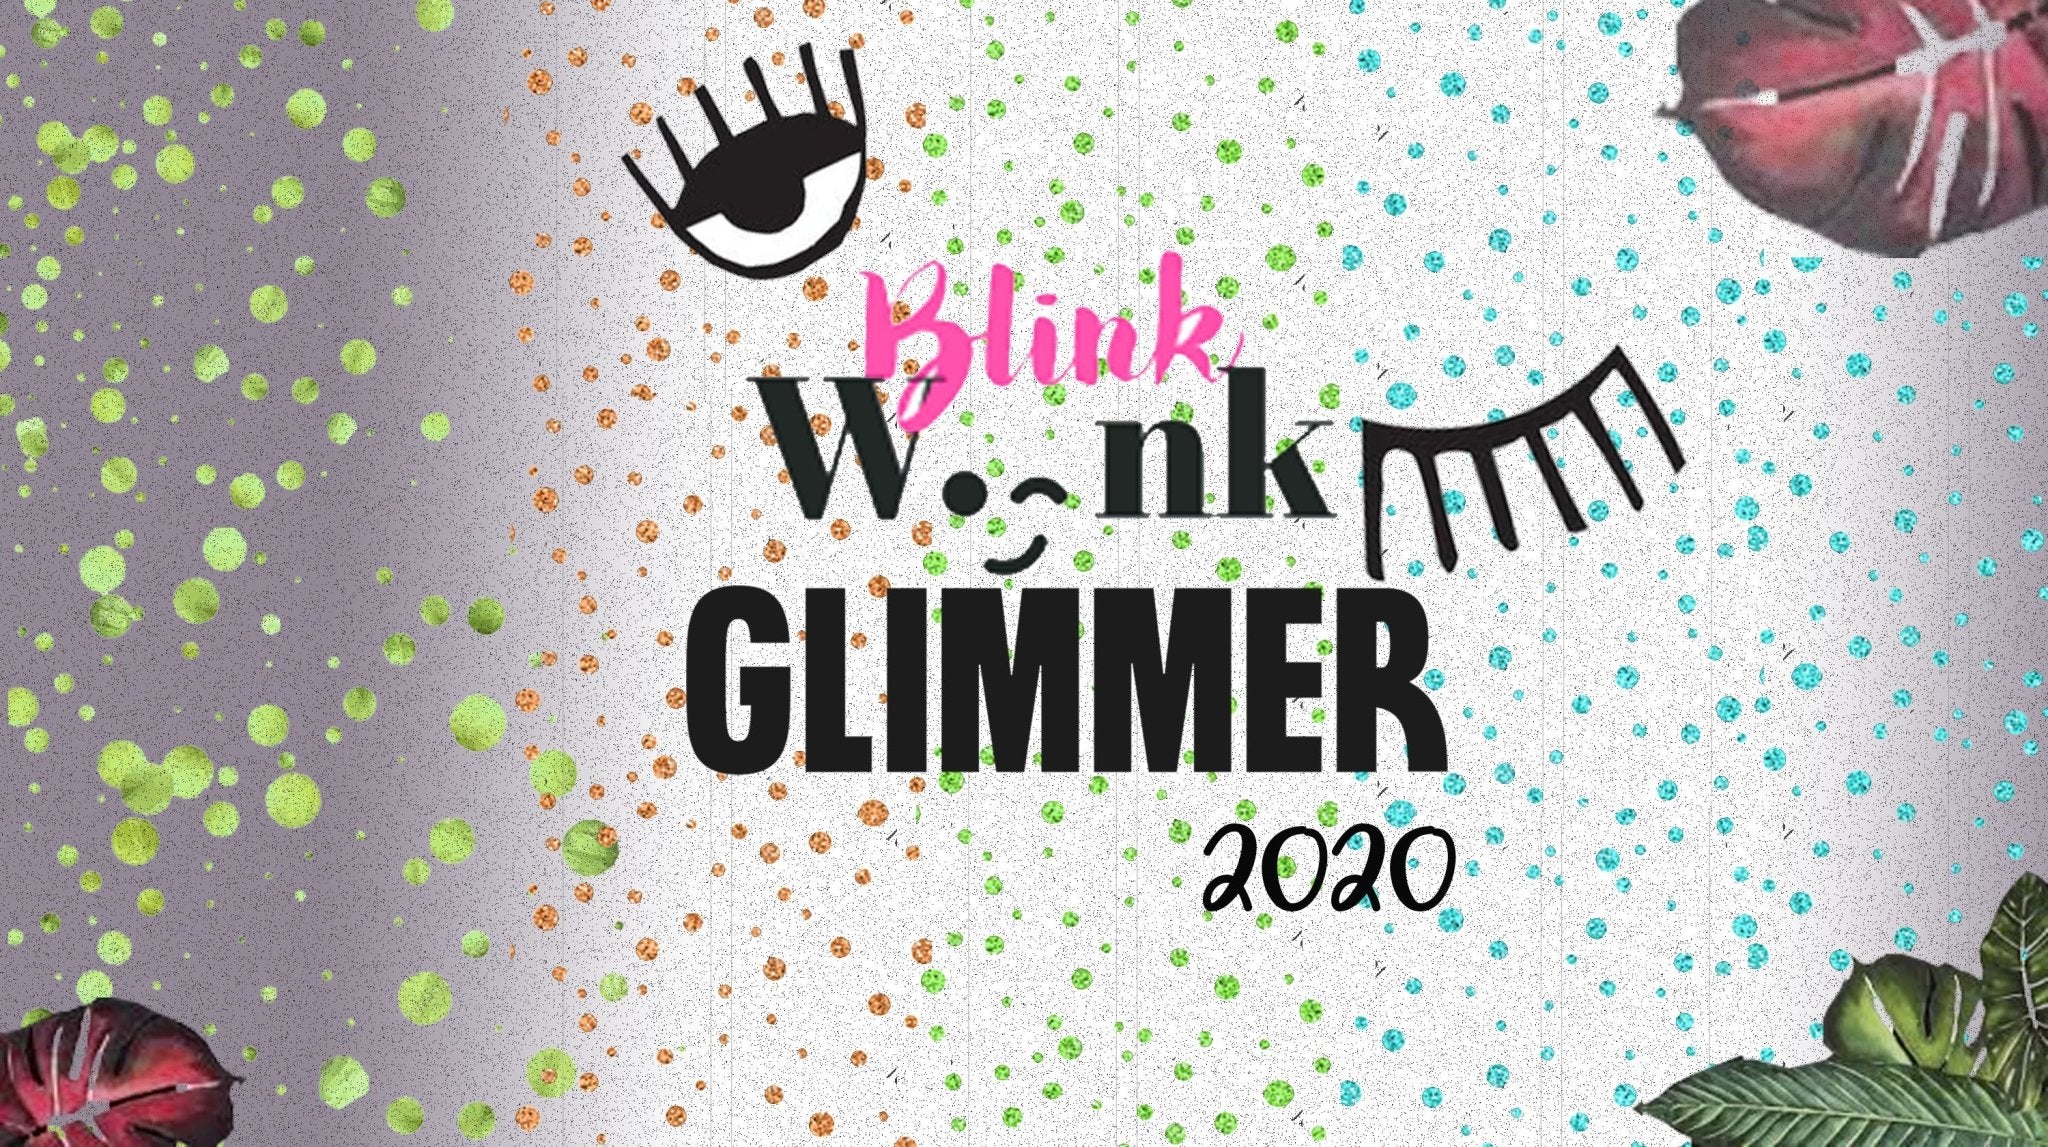 Blink Wink Glimmer 2020 - Negative Apparel